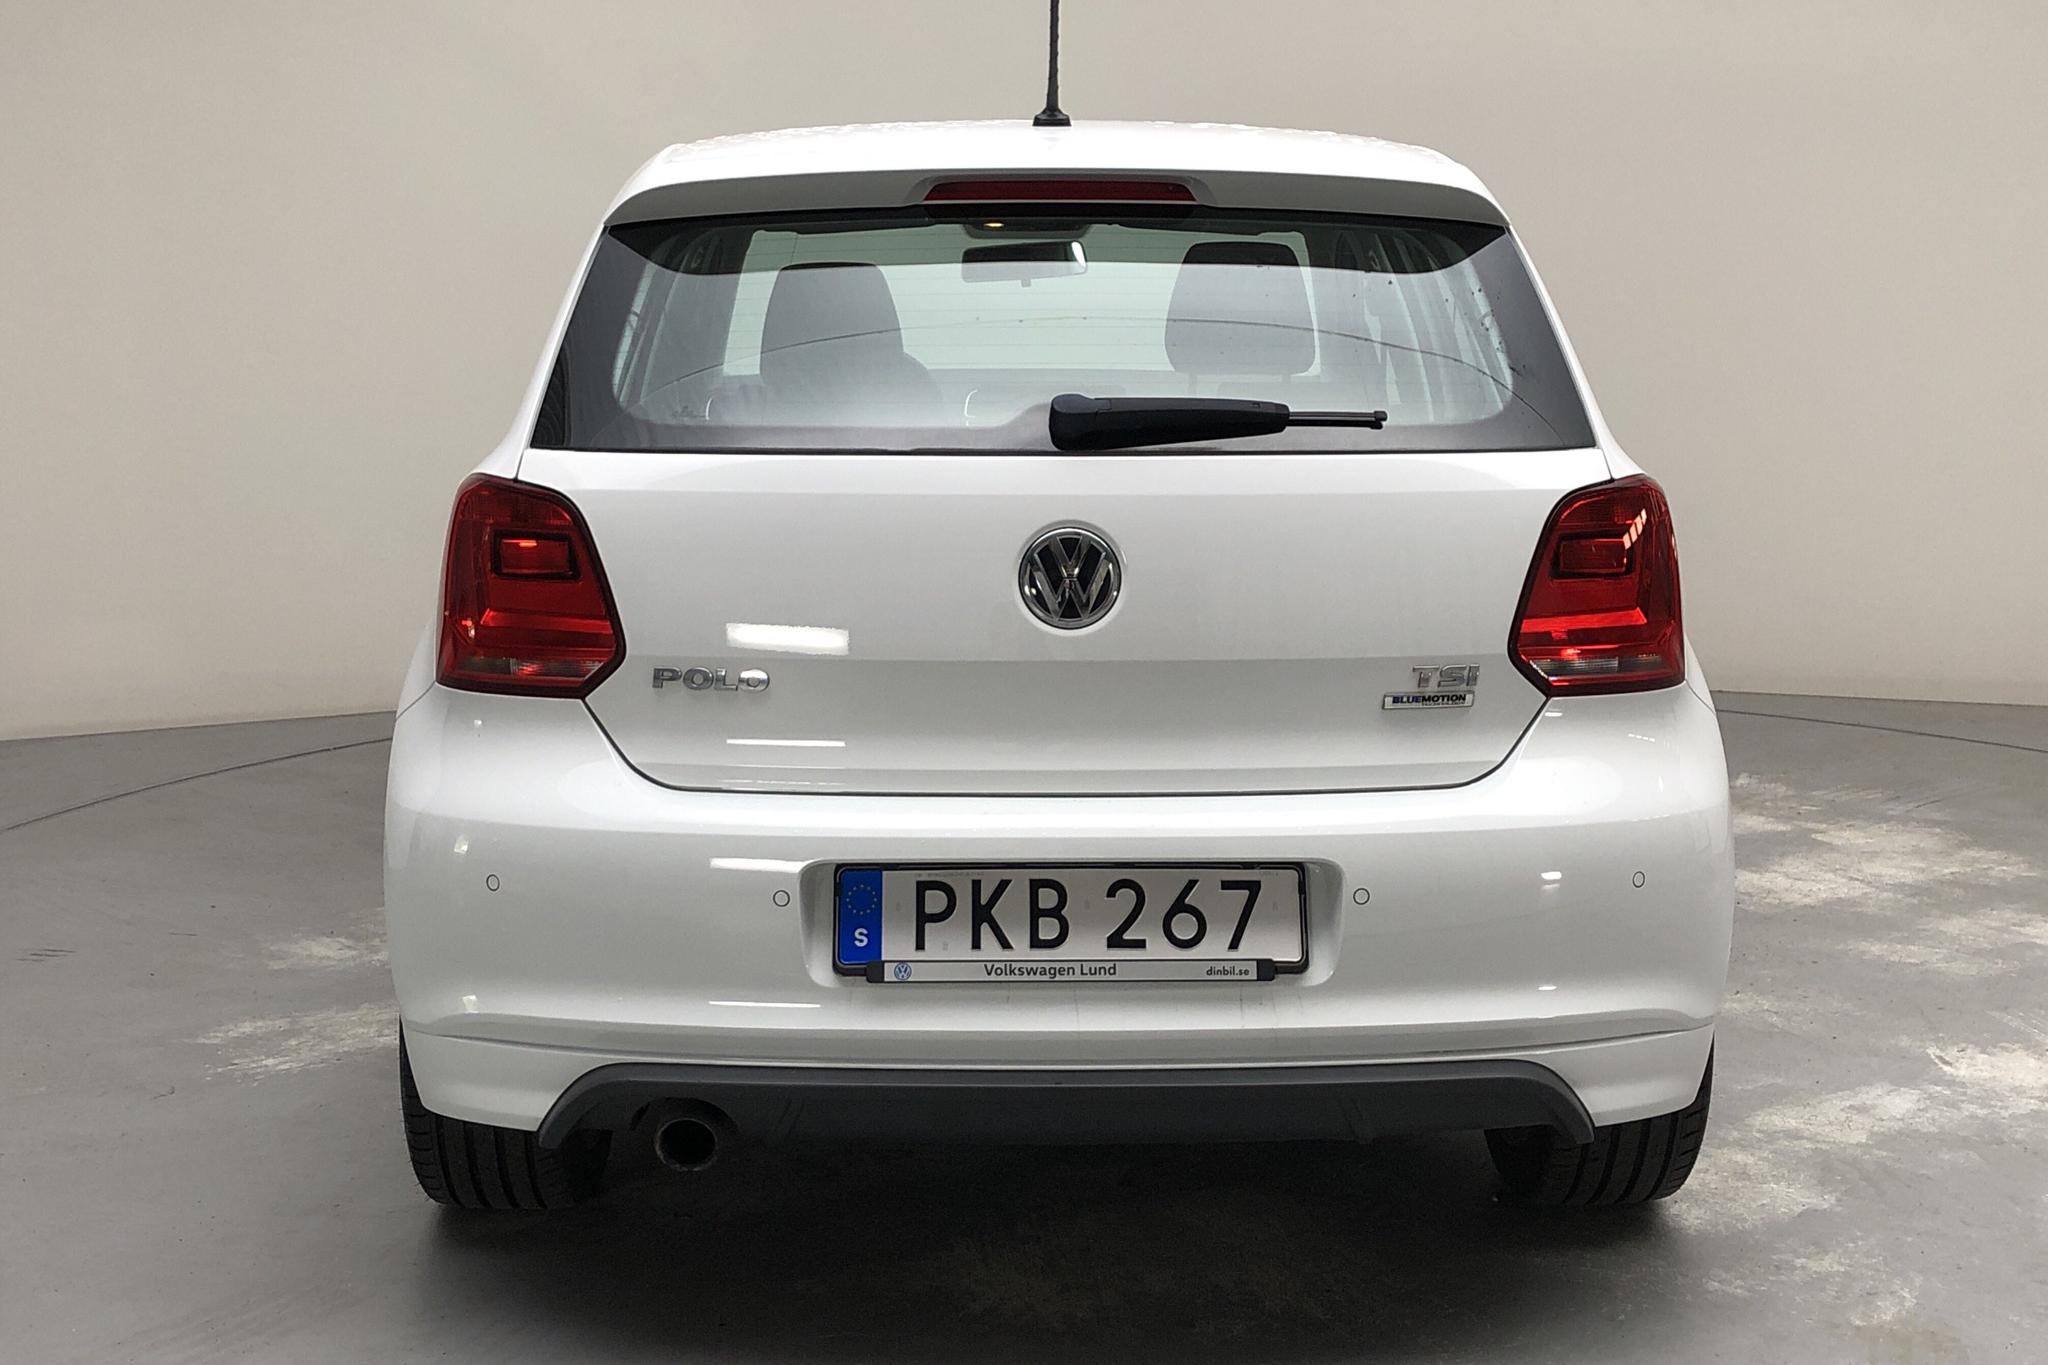 VW Polo 1.2 TSI 5dr (90hk) - 80 610 km - Manual - white - 2017